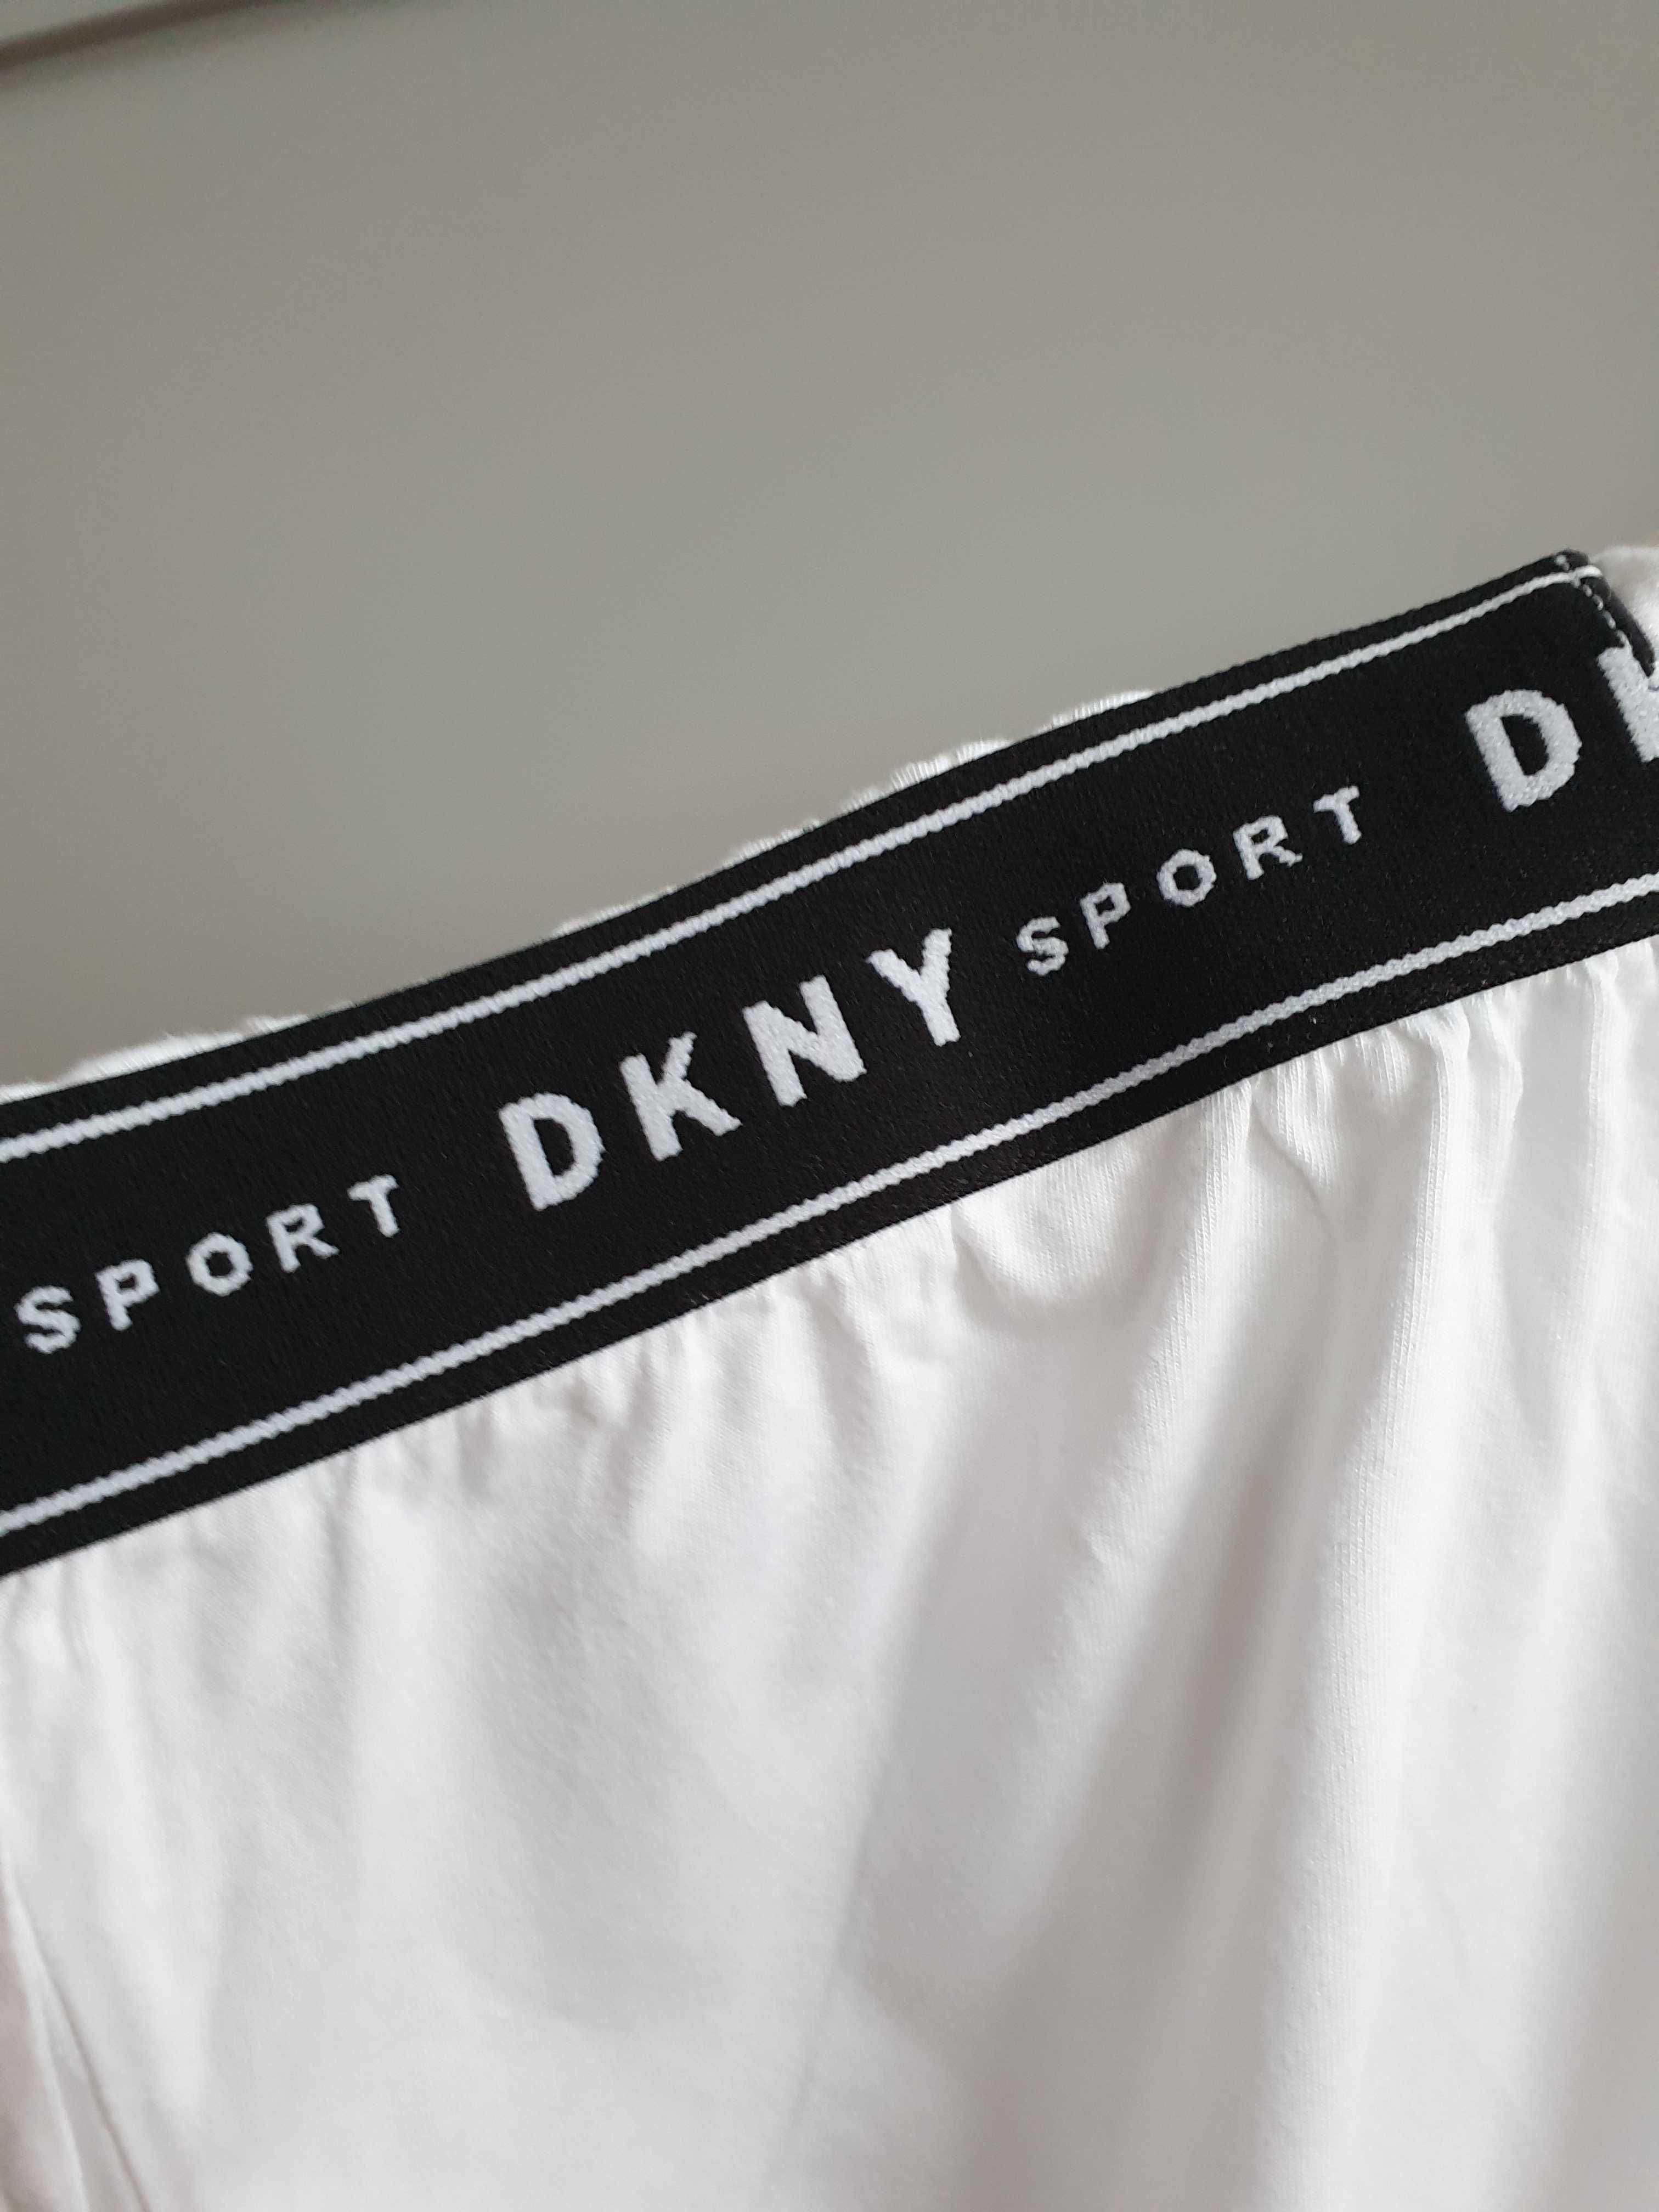 Biała koszulka t-shirt DKNY Sport S M L bawełna modal